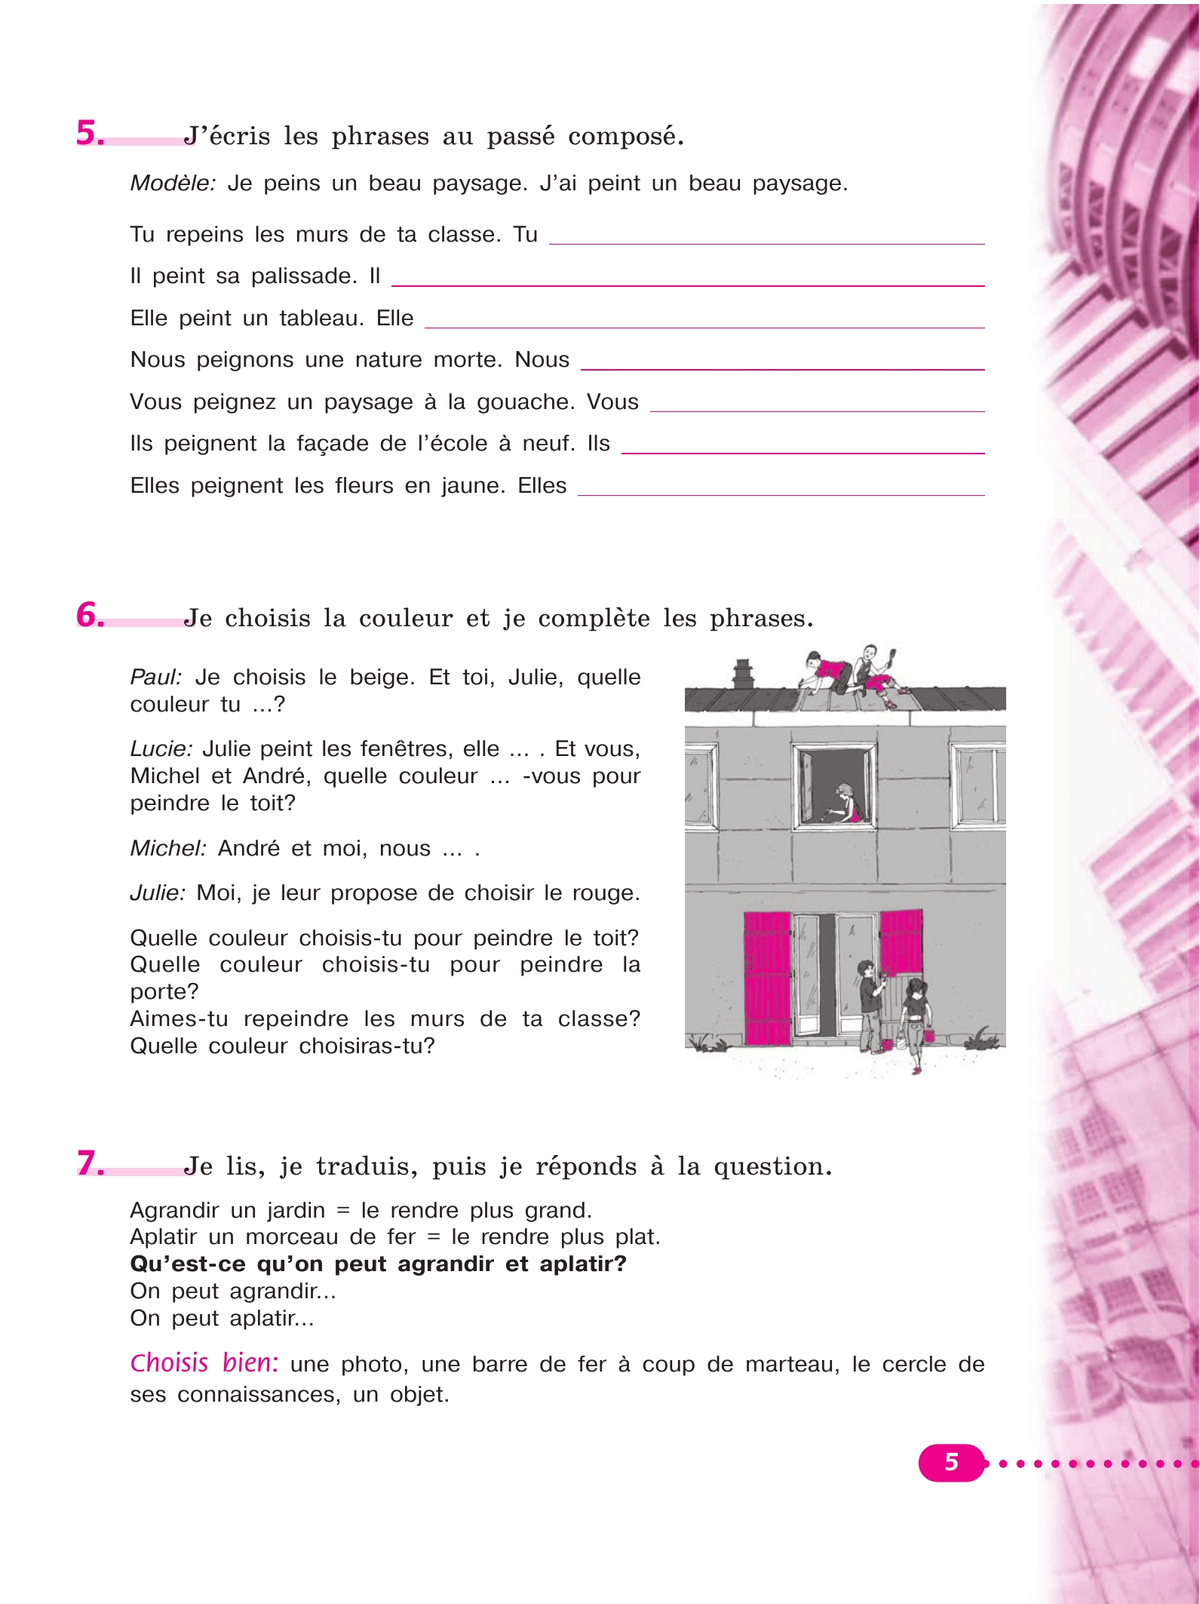 Французский язык. Рабочая тетрадь. 6 класс. 7